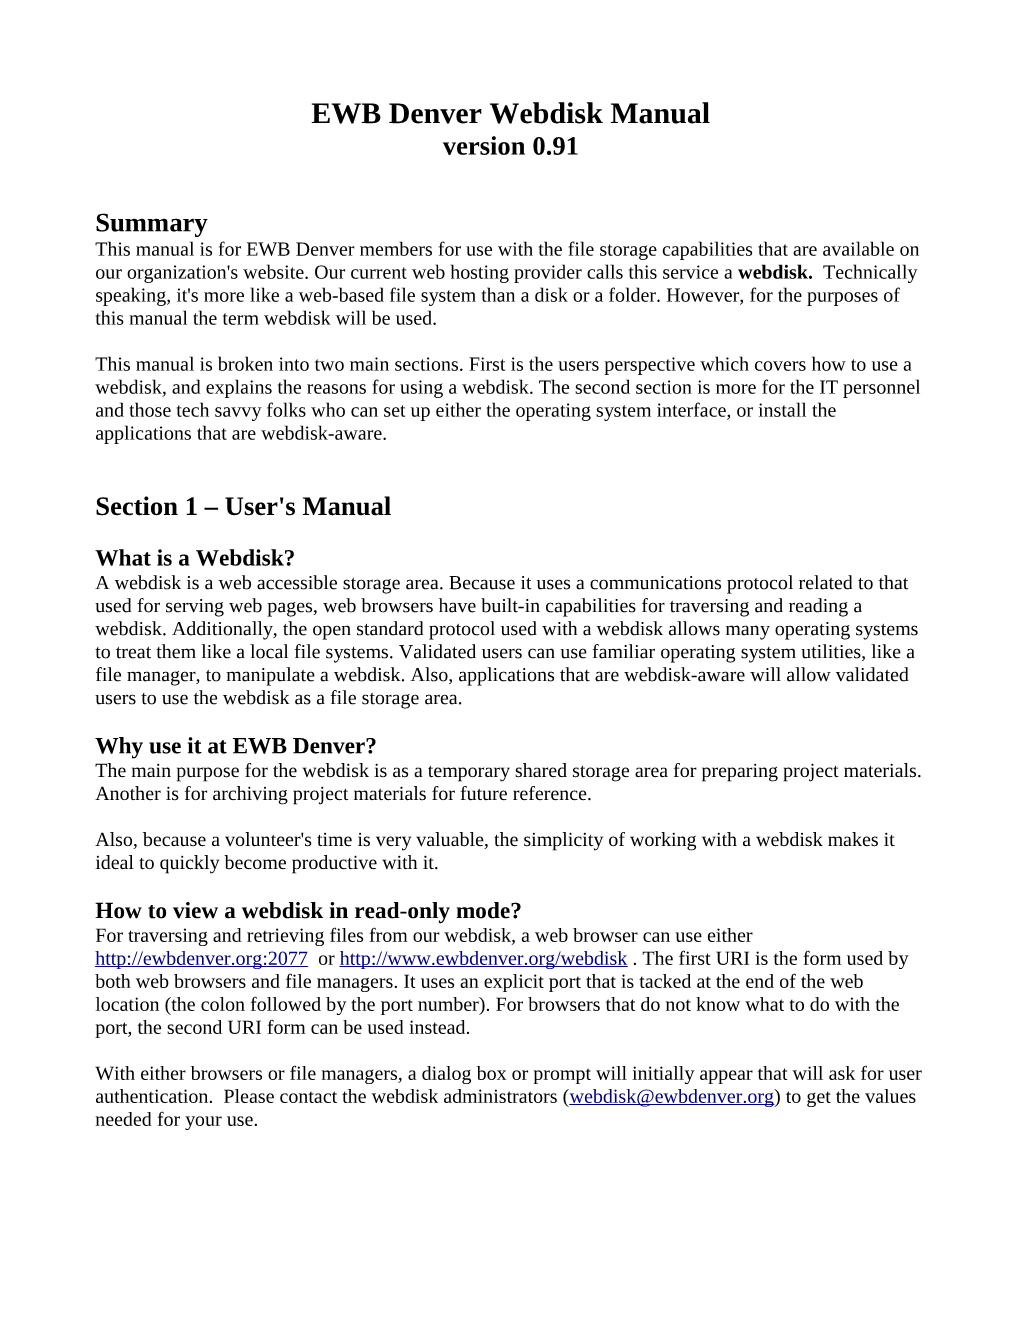 EWB Denver Webdisk Manual Version 0.91